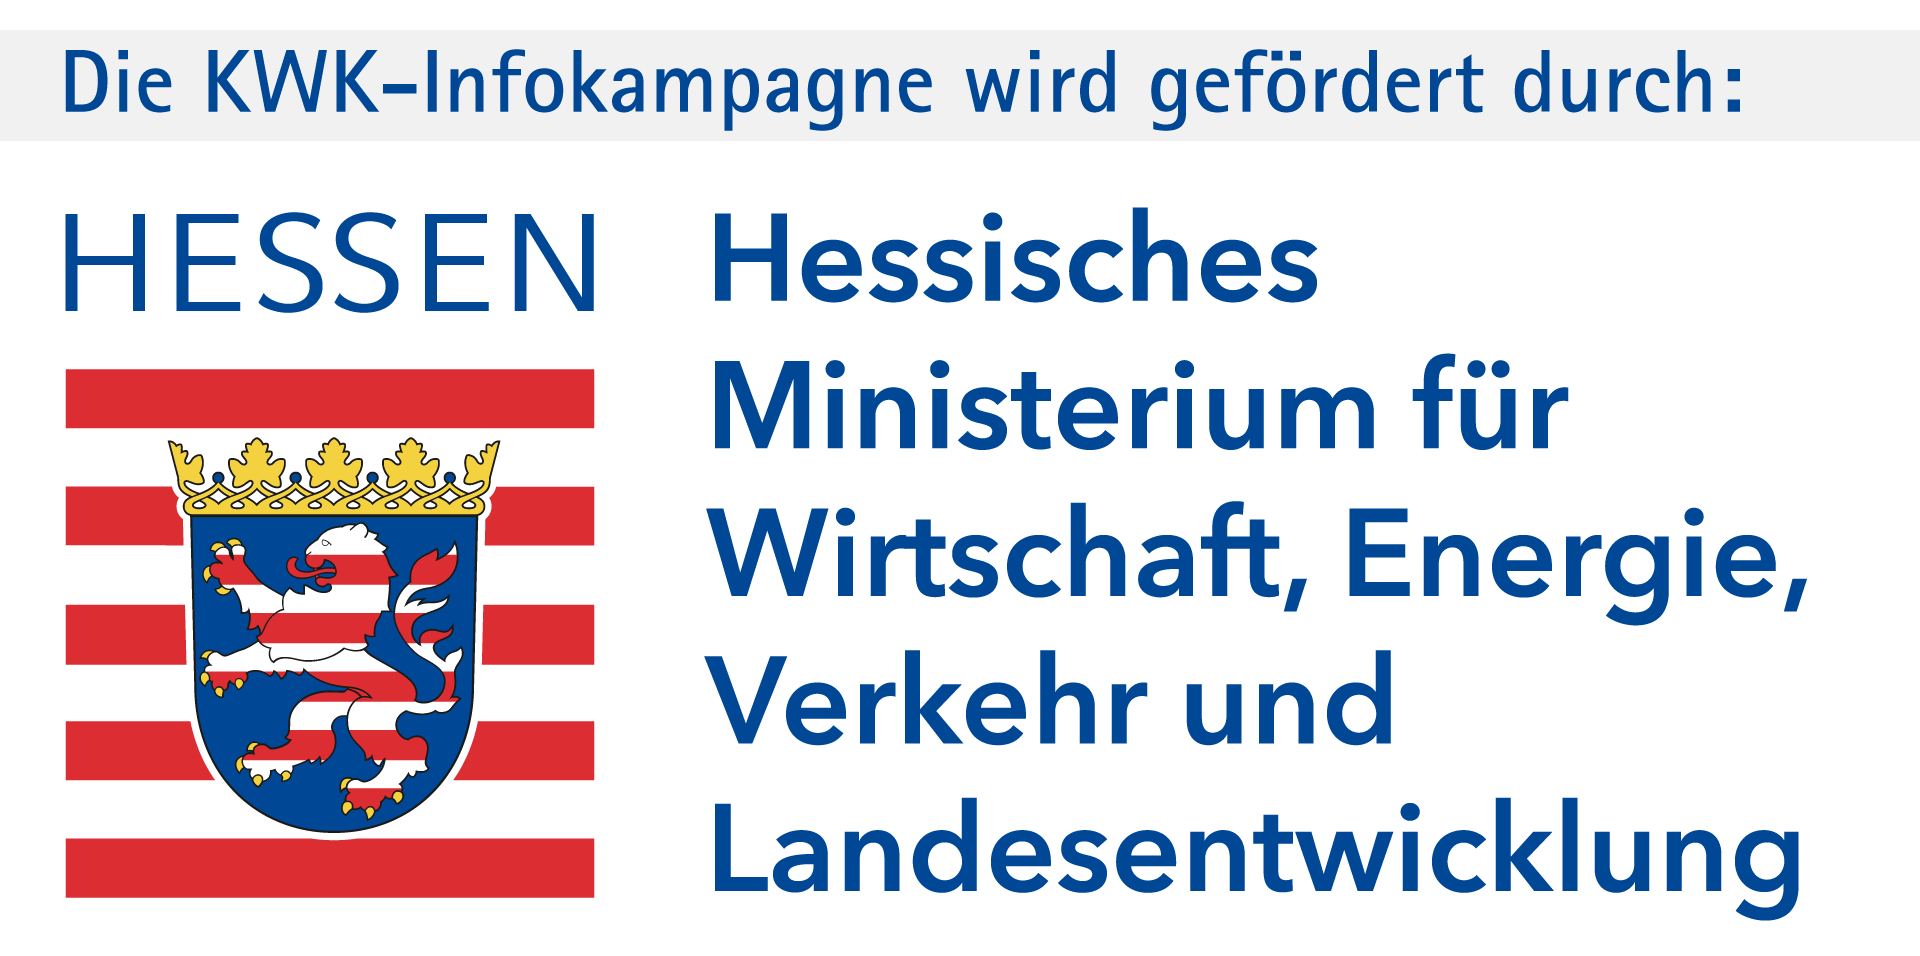 Das Projekt „KWK-Infokampagne” wird gefördert durch das Hessische Ministerium für Wirtschaft, Energie, Verkehr und Landesentwicklung.